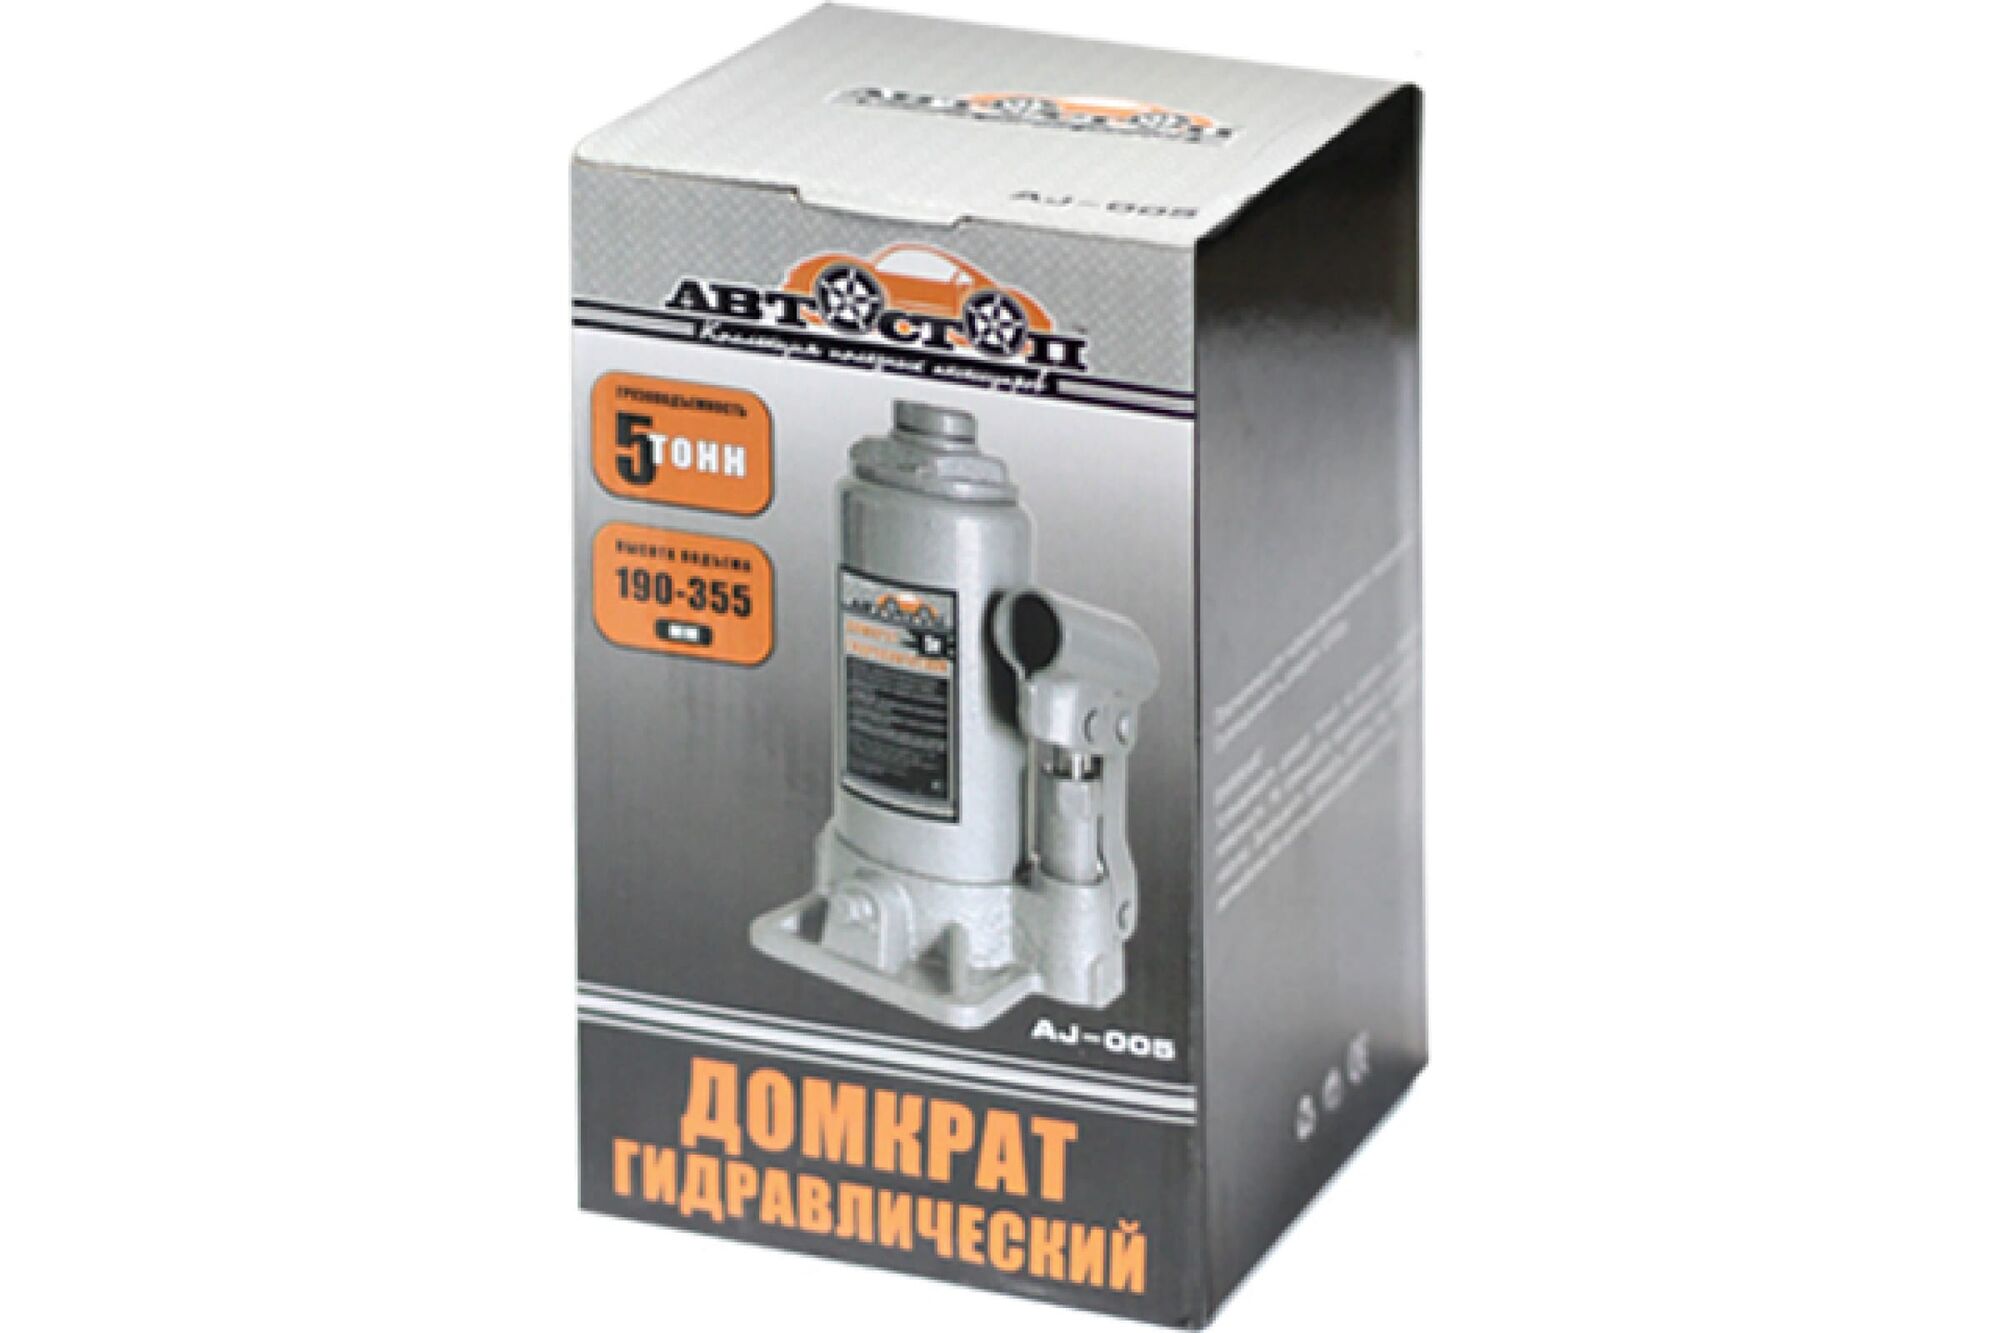 Гидравлический бутылочный домкрат 5 т АВТОСТОП AJ-005 Автостоп